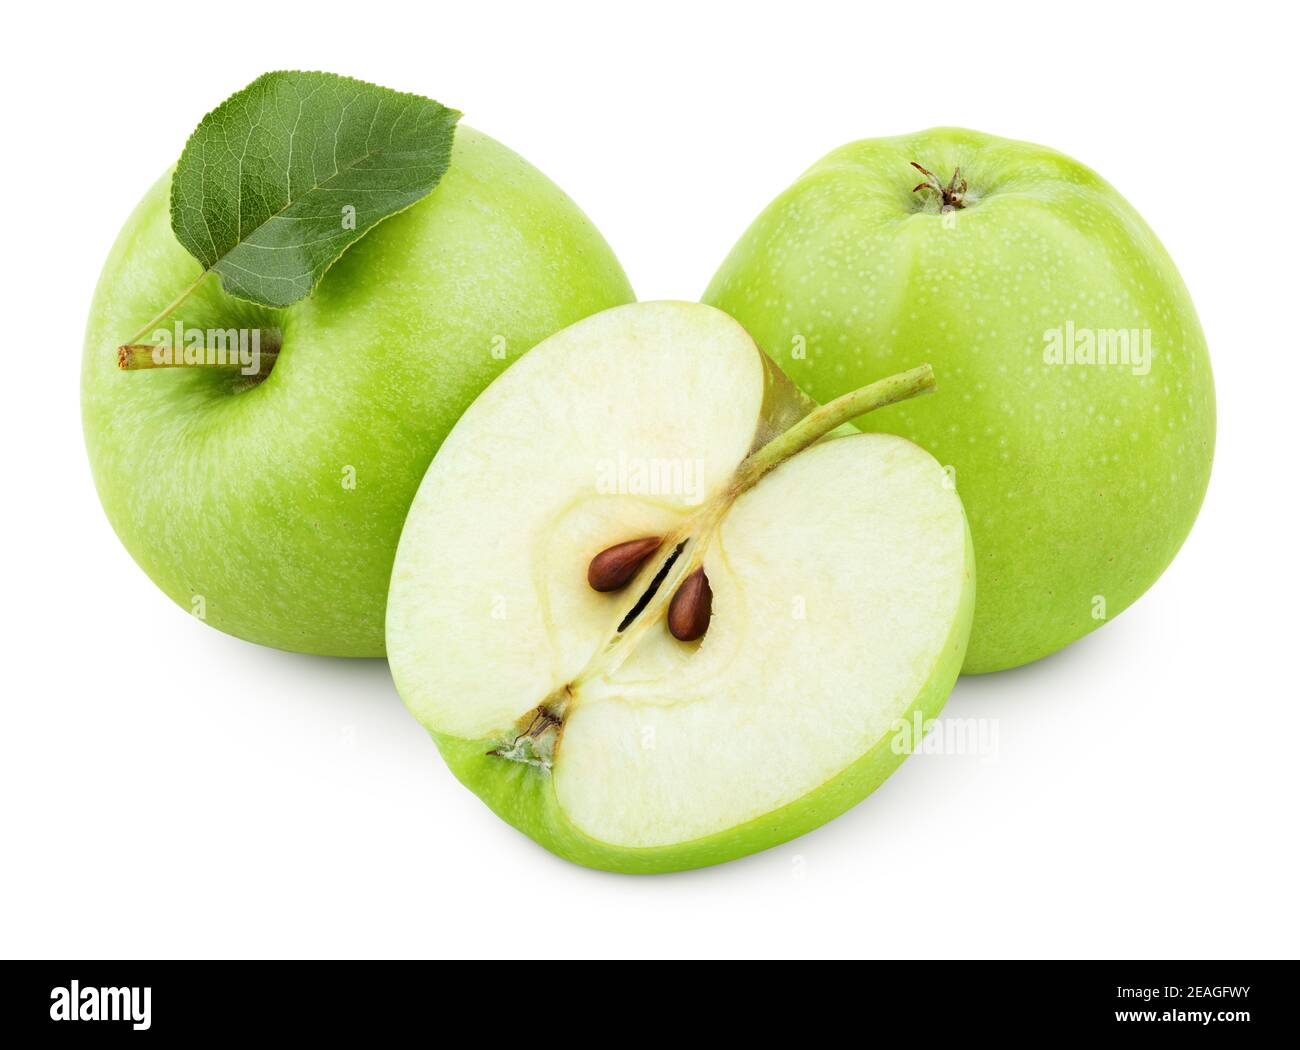 Gruppo di mele verdi mature con mezzo di mela e foglia di mela verde isolato su sfondo bianco. Mele con percorso di taglio Foto Stock